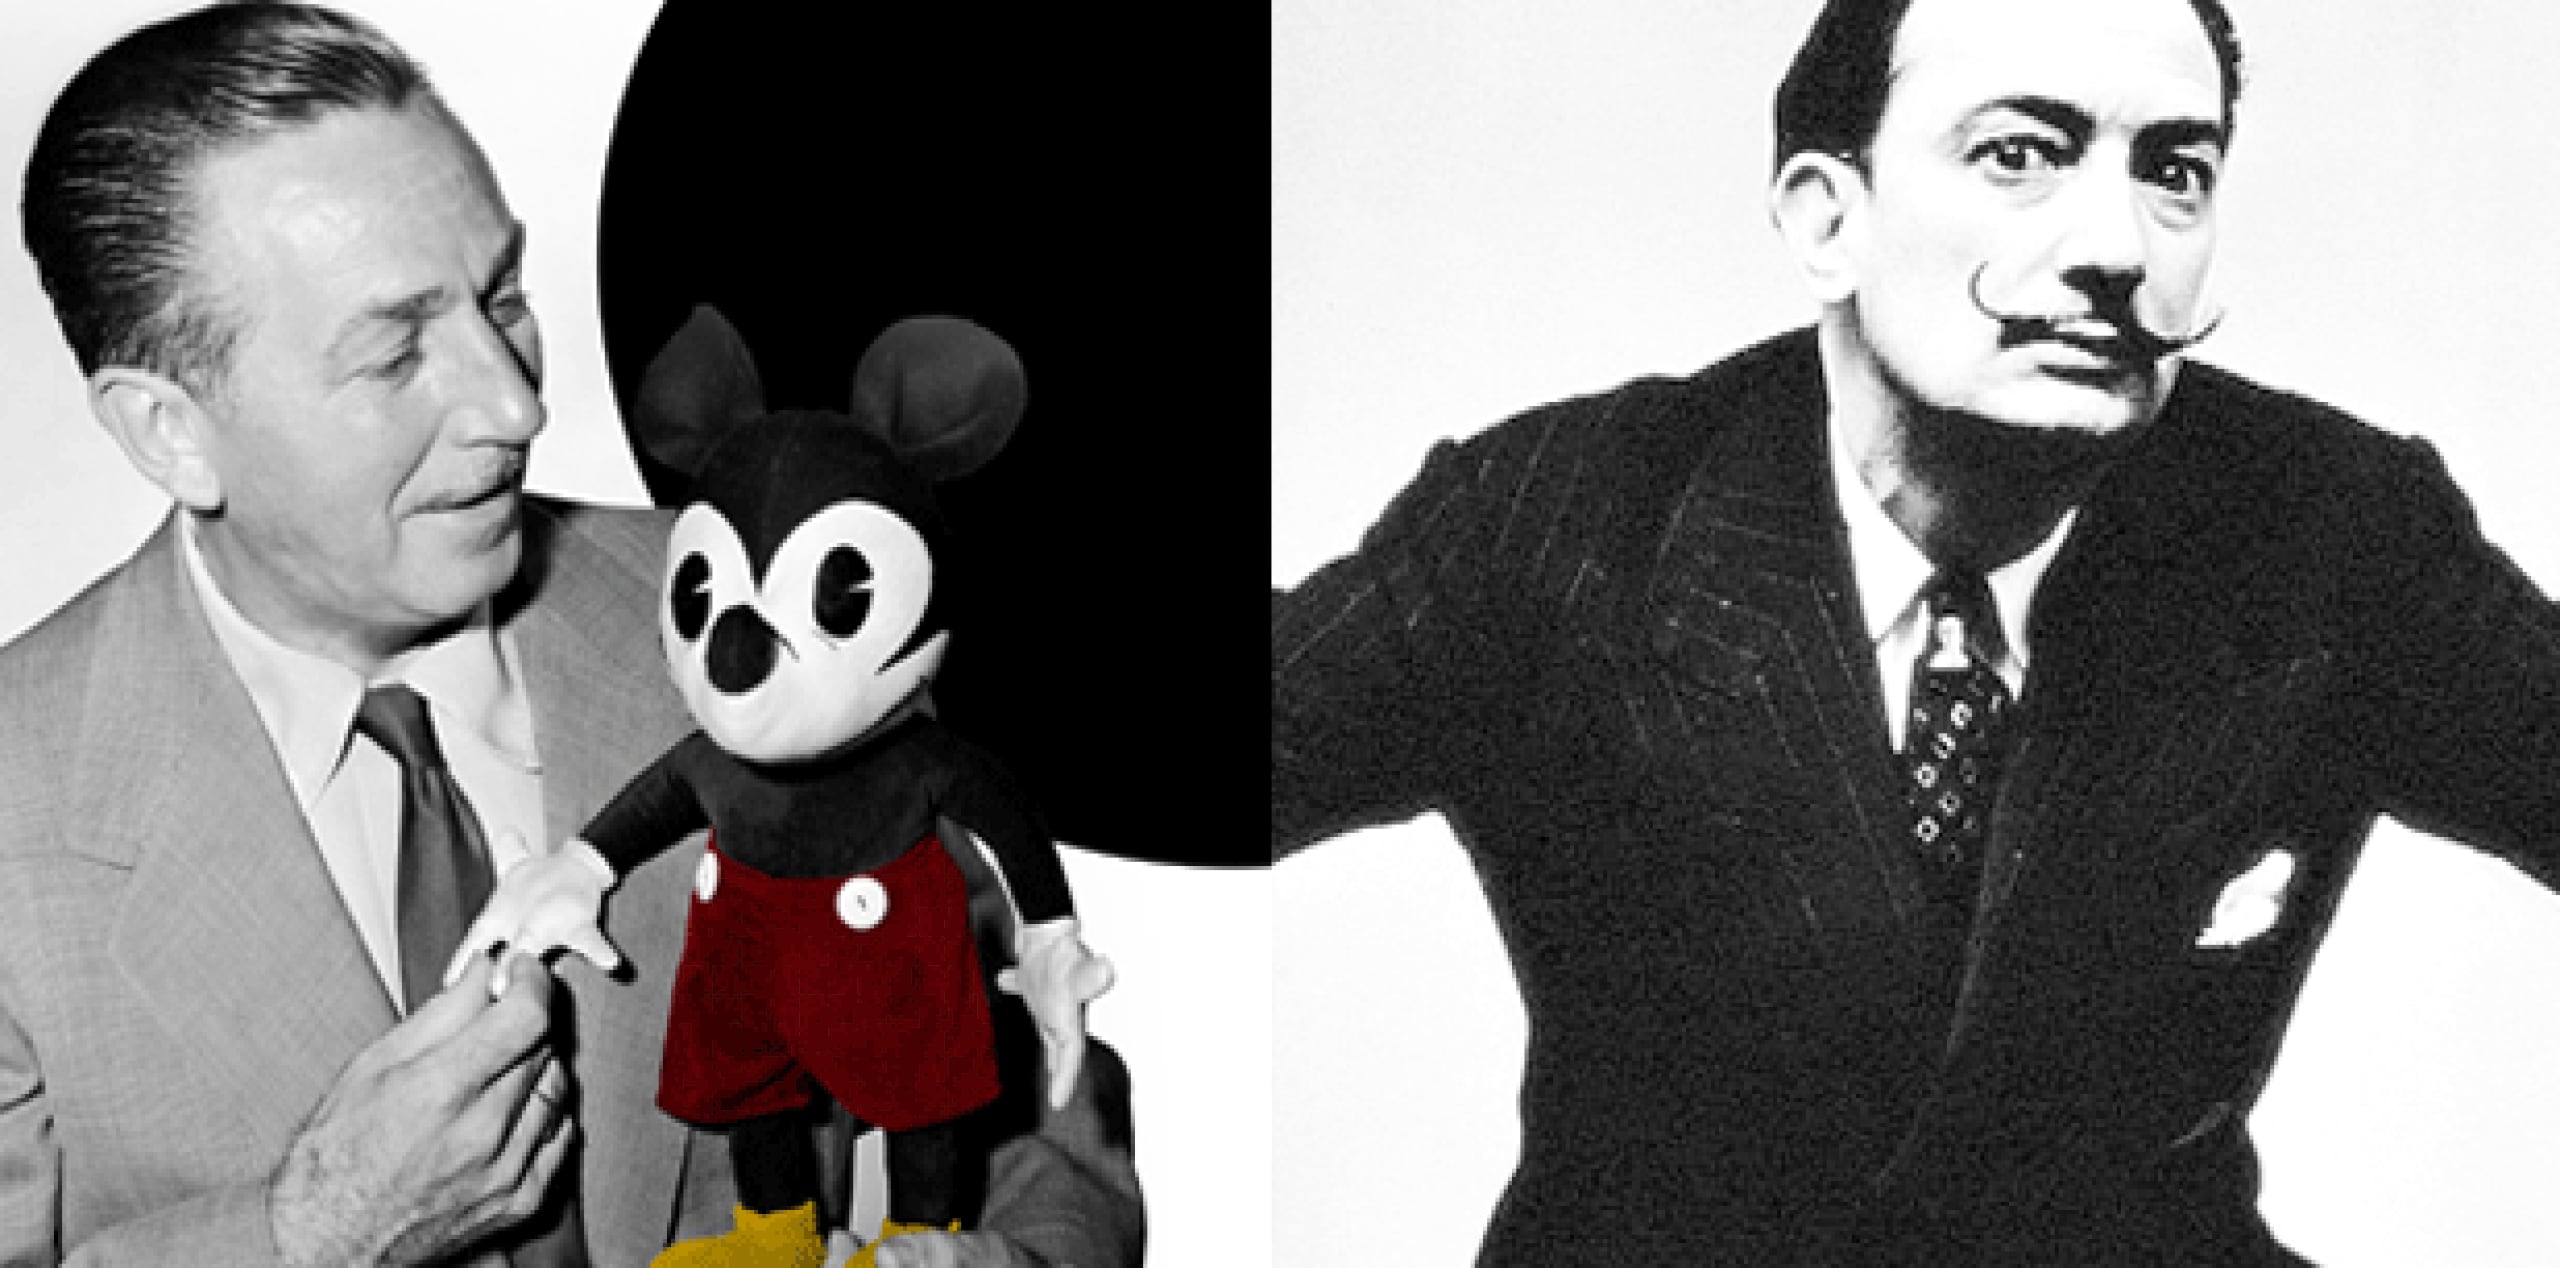 El improbable lazo entre el cerebro creador de Disneylandia y el pintor español de imágenes distorsionadas es el tema de una exhibición que estará abierta del 10 de julio al 3 de enero en el Walt Disney Family Museum en San Francisco. Luego pasará al Museo de Dalí en St. Petersburg, Florida. (Archivo)